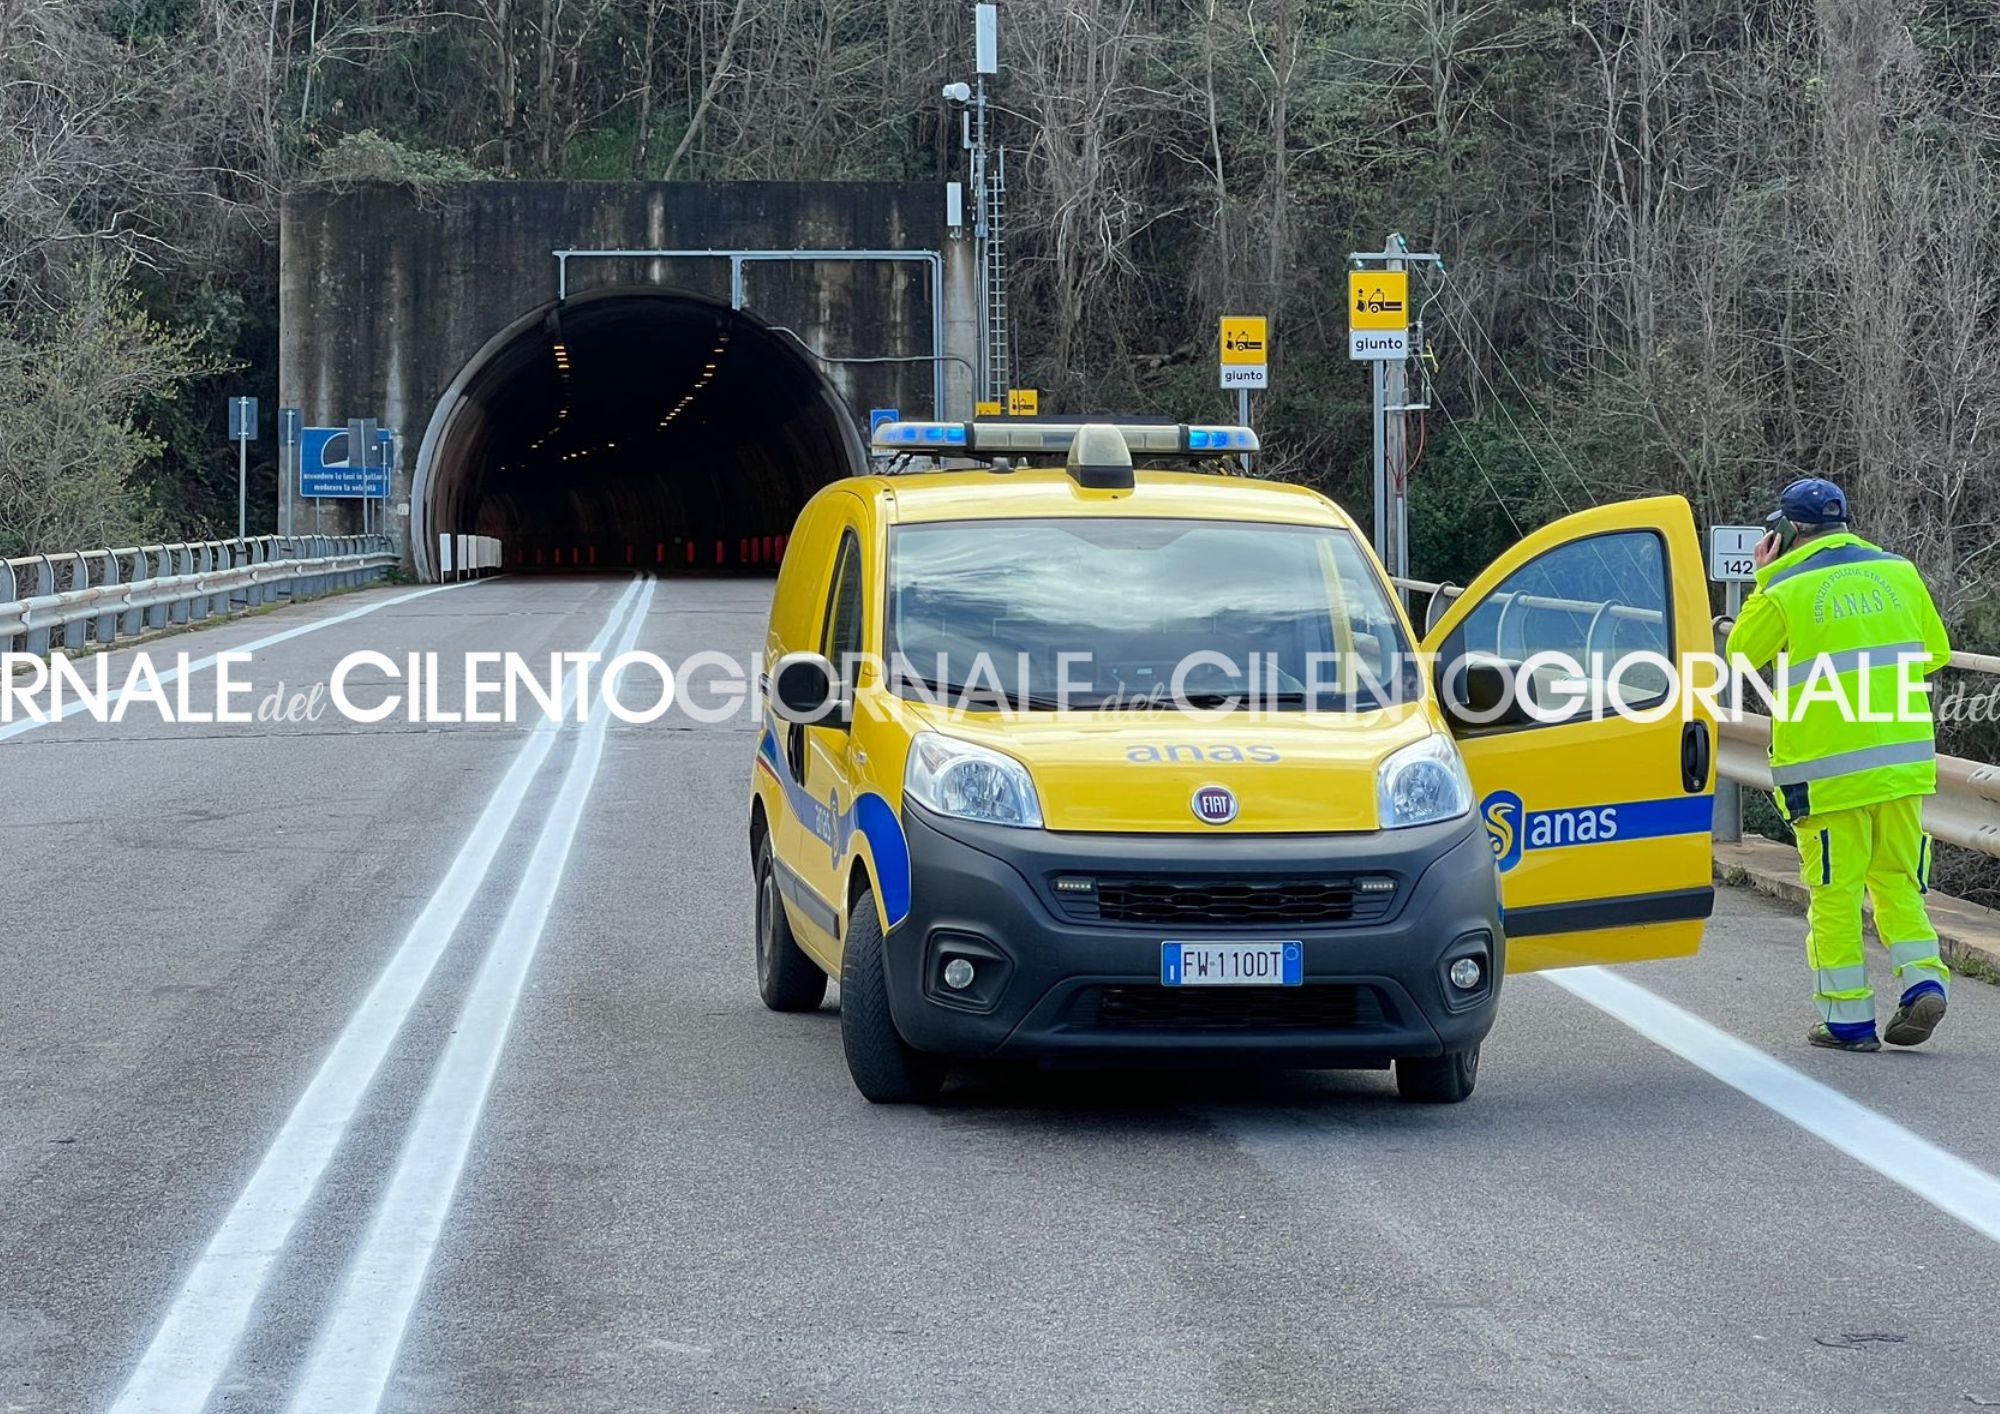 Riaperta al traffico la strada Cilentana tra gli svincoli di Cuccaro e Ceraso